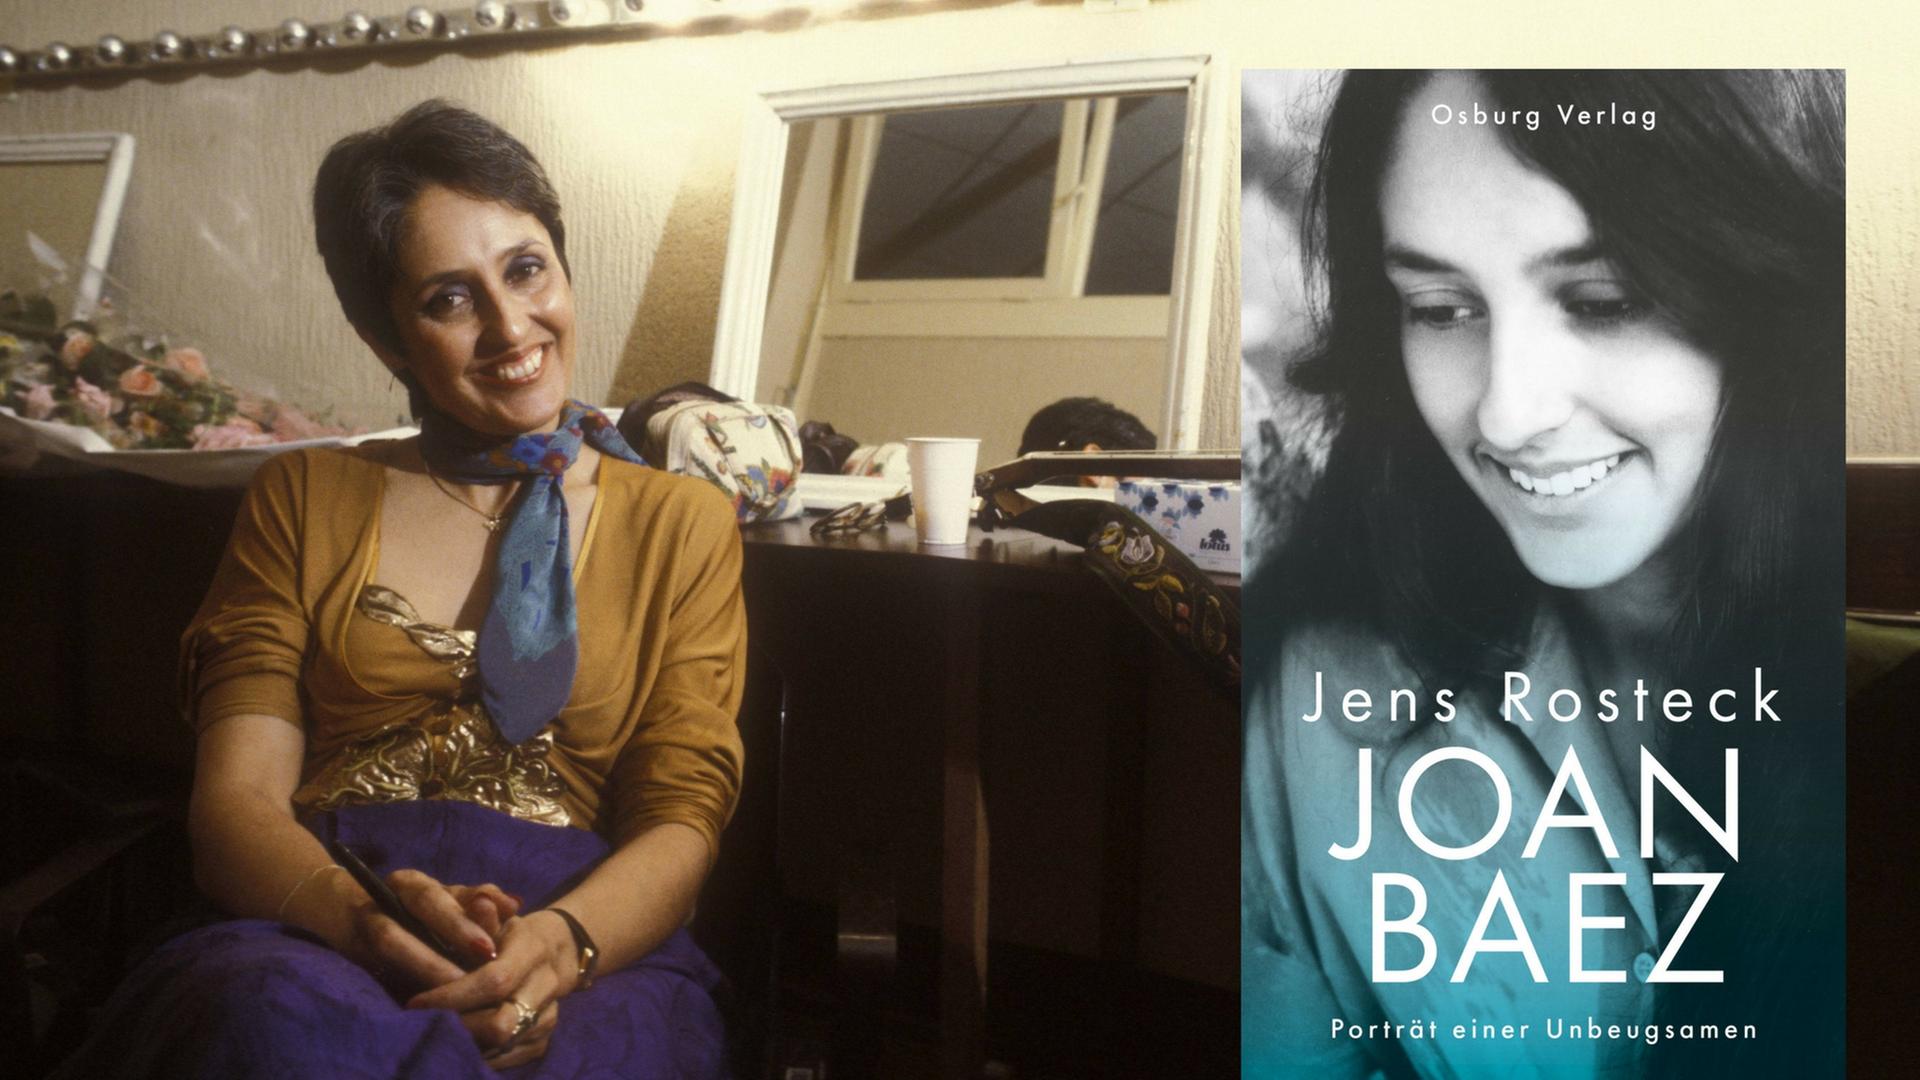 Joan Baez im Jahre 1980, daneben das Buchcover "Joan Baez. Porträt einer Unbeugsamen".